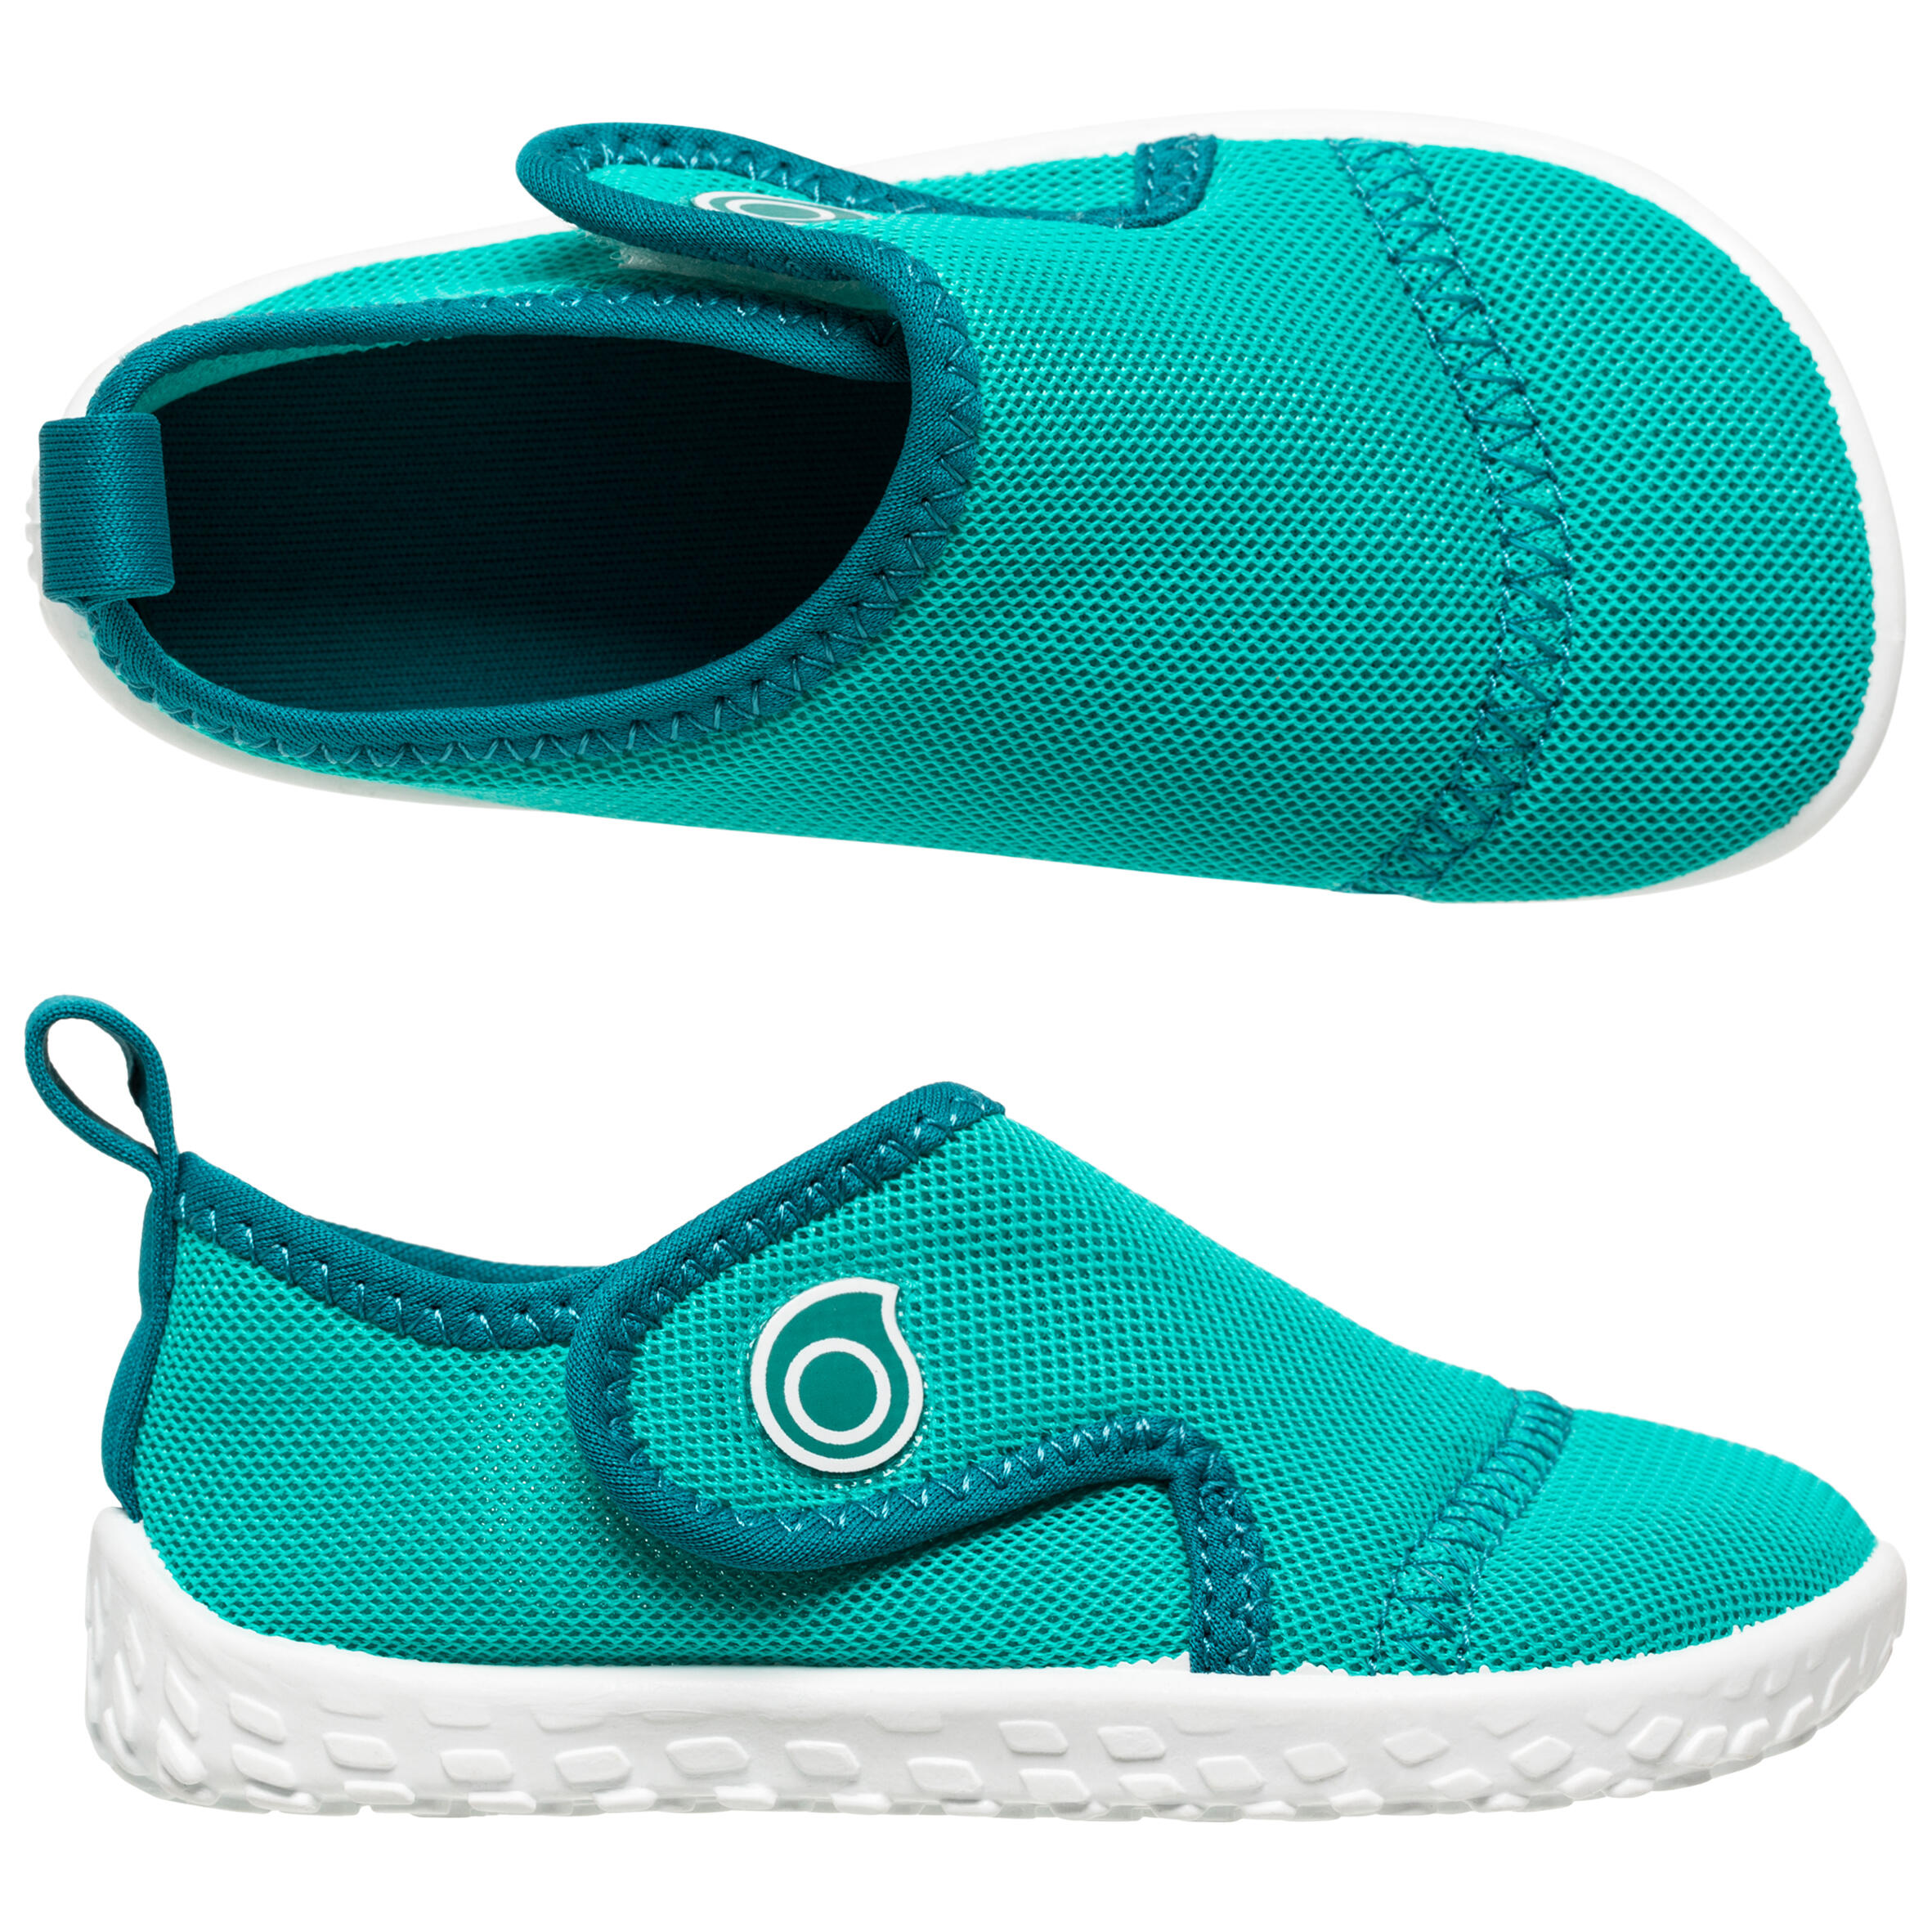 Chaussures nautiques enfant - 100 bleu - SUBEA